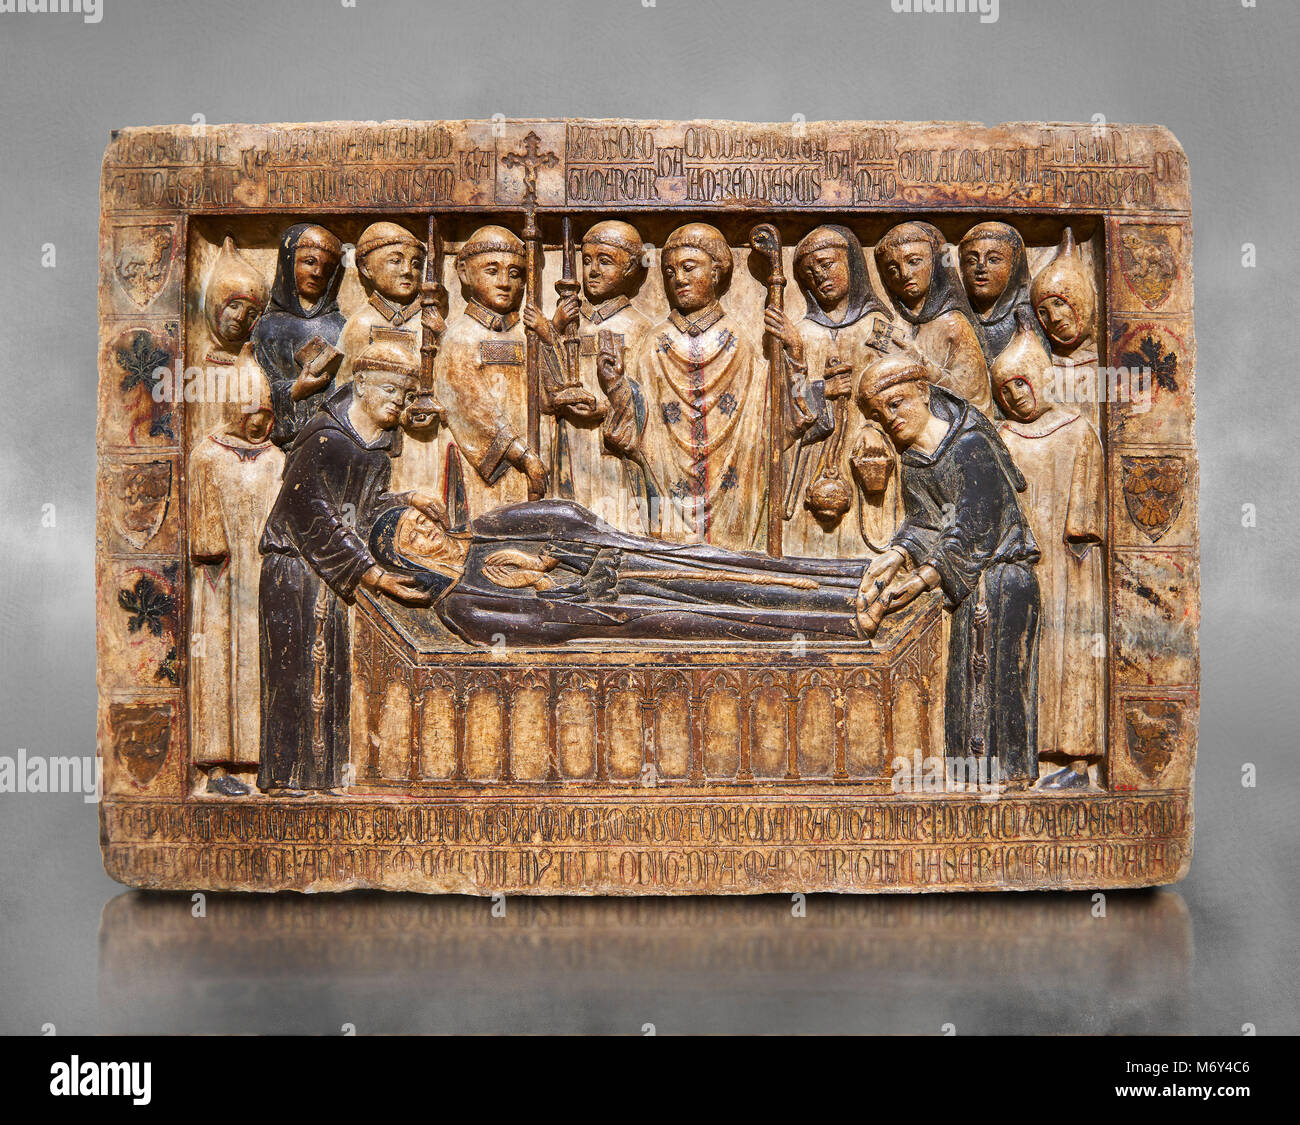 Gótico Catalán socorro de la escultura de mármol de la tumba de Margarida Cadell, murió 1308, desde el convento de Sant Domenee de Puigcerdà, La Cerdanya, España. Foto de stock